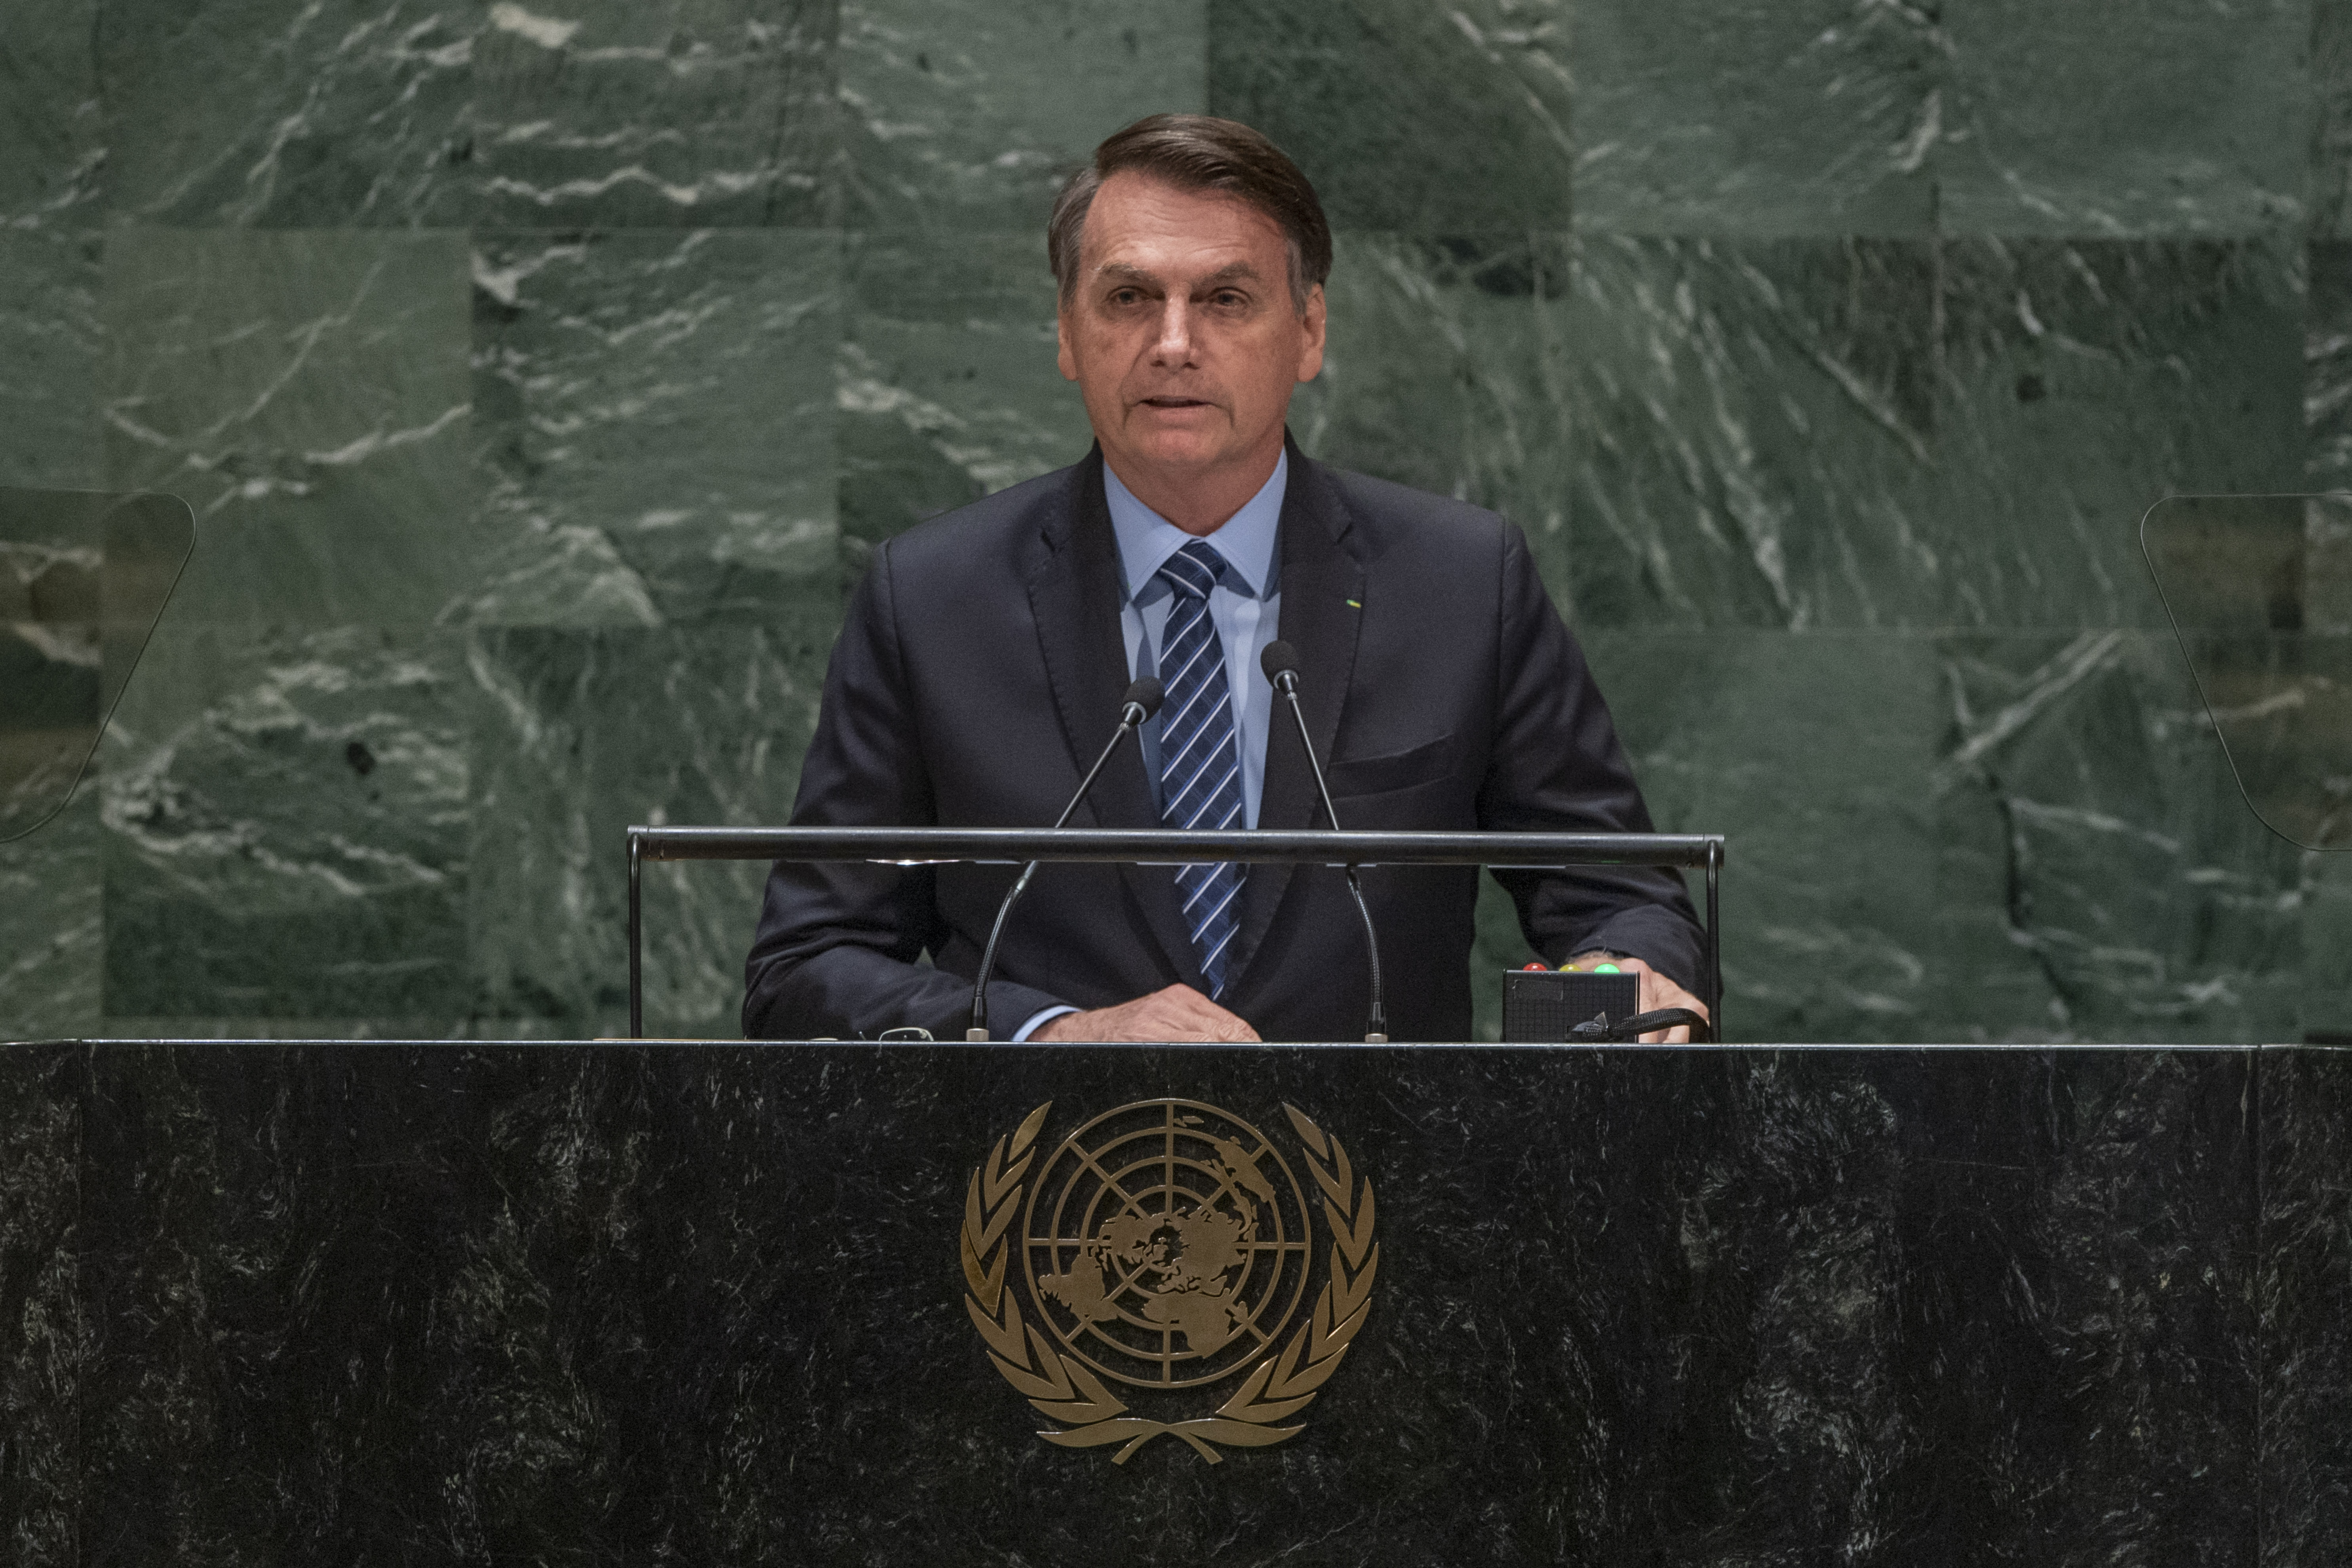 Em discurso agressivo na ONU, Bolsonaro ataca países e diz que há falácias sobre Amazônia